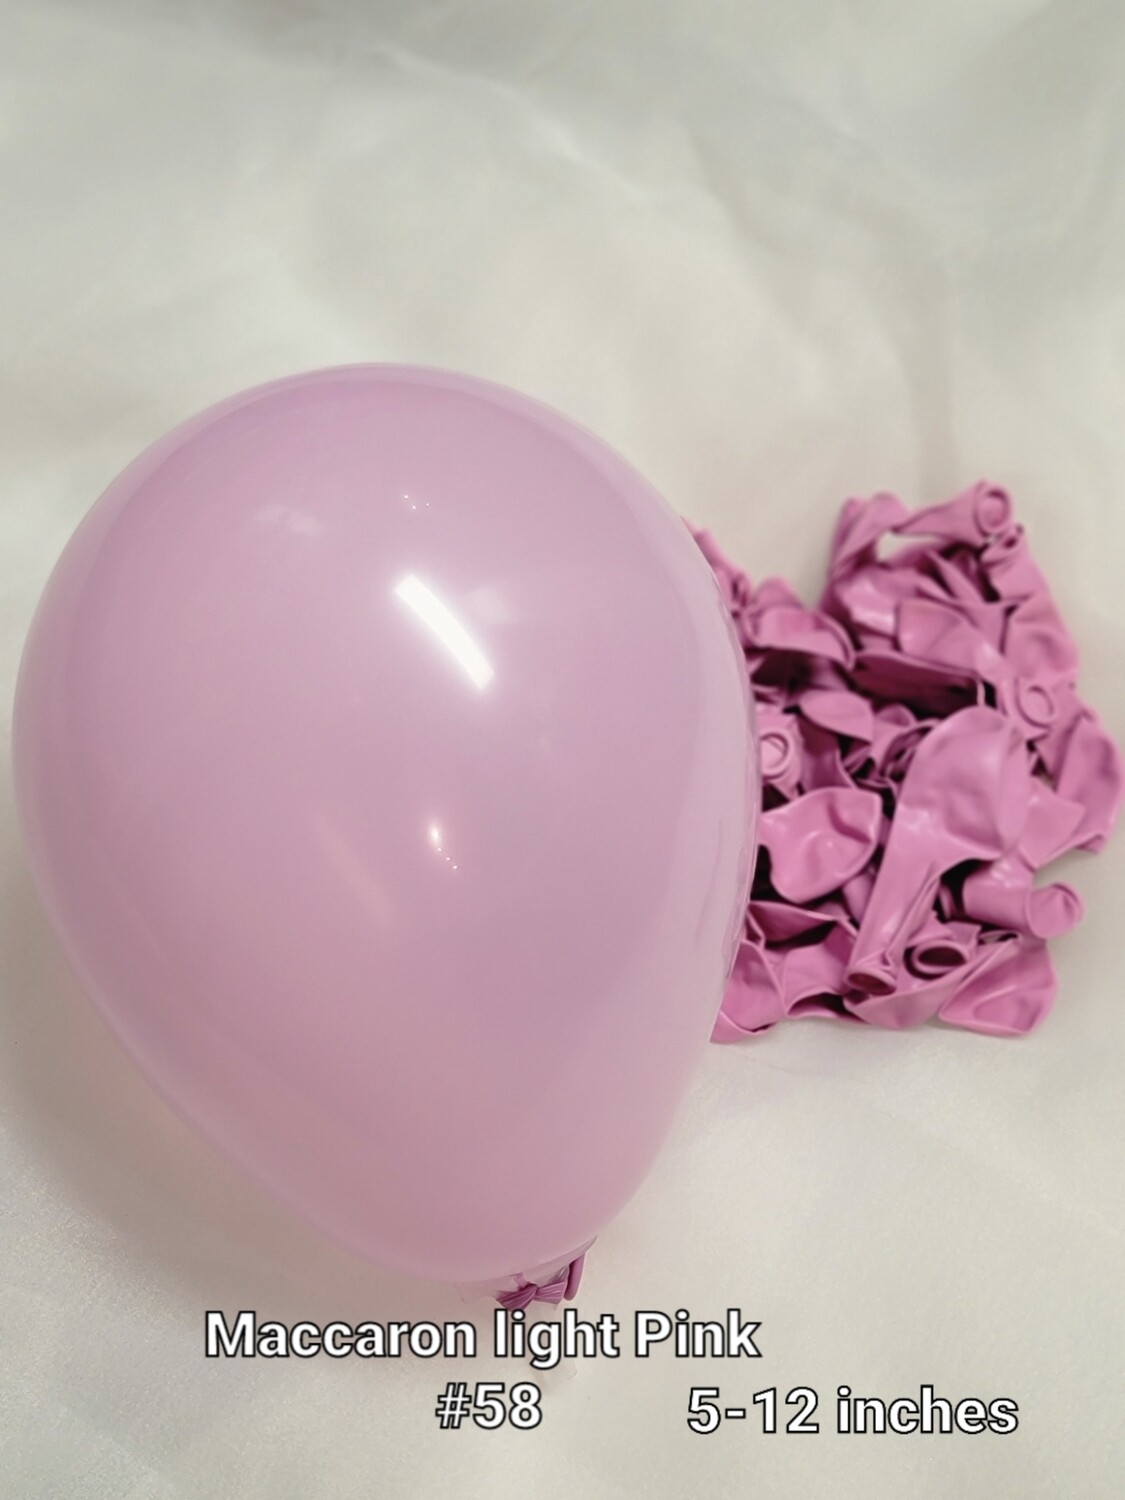 Macaroon light pink balloon